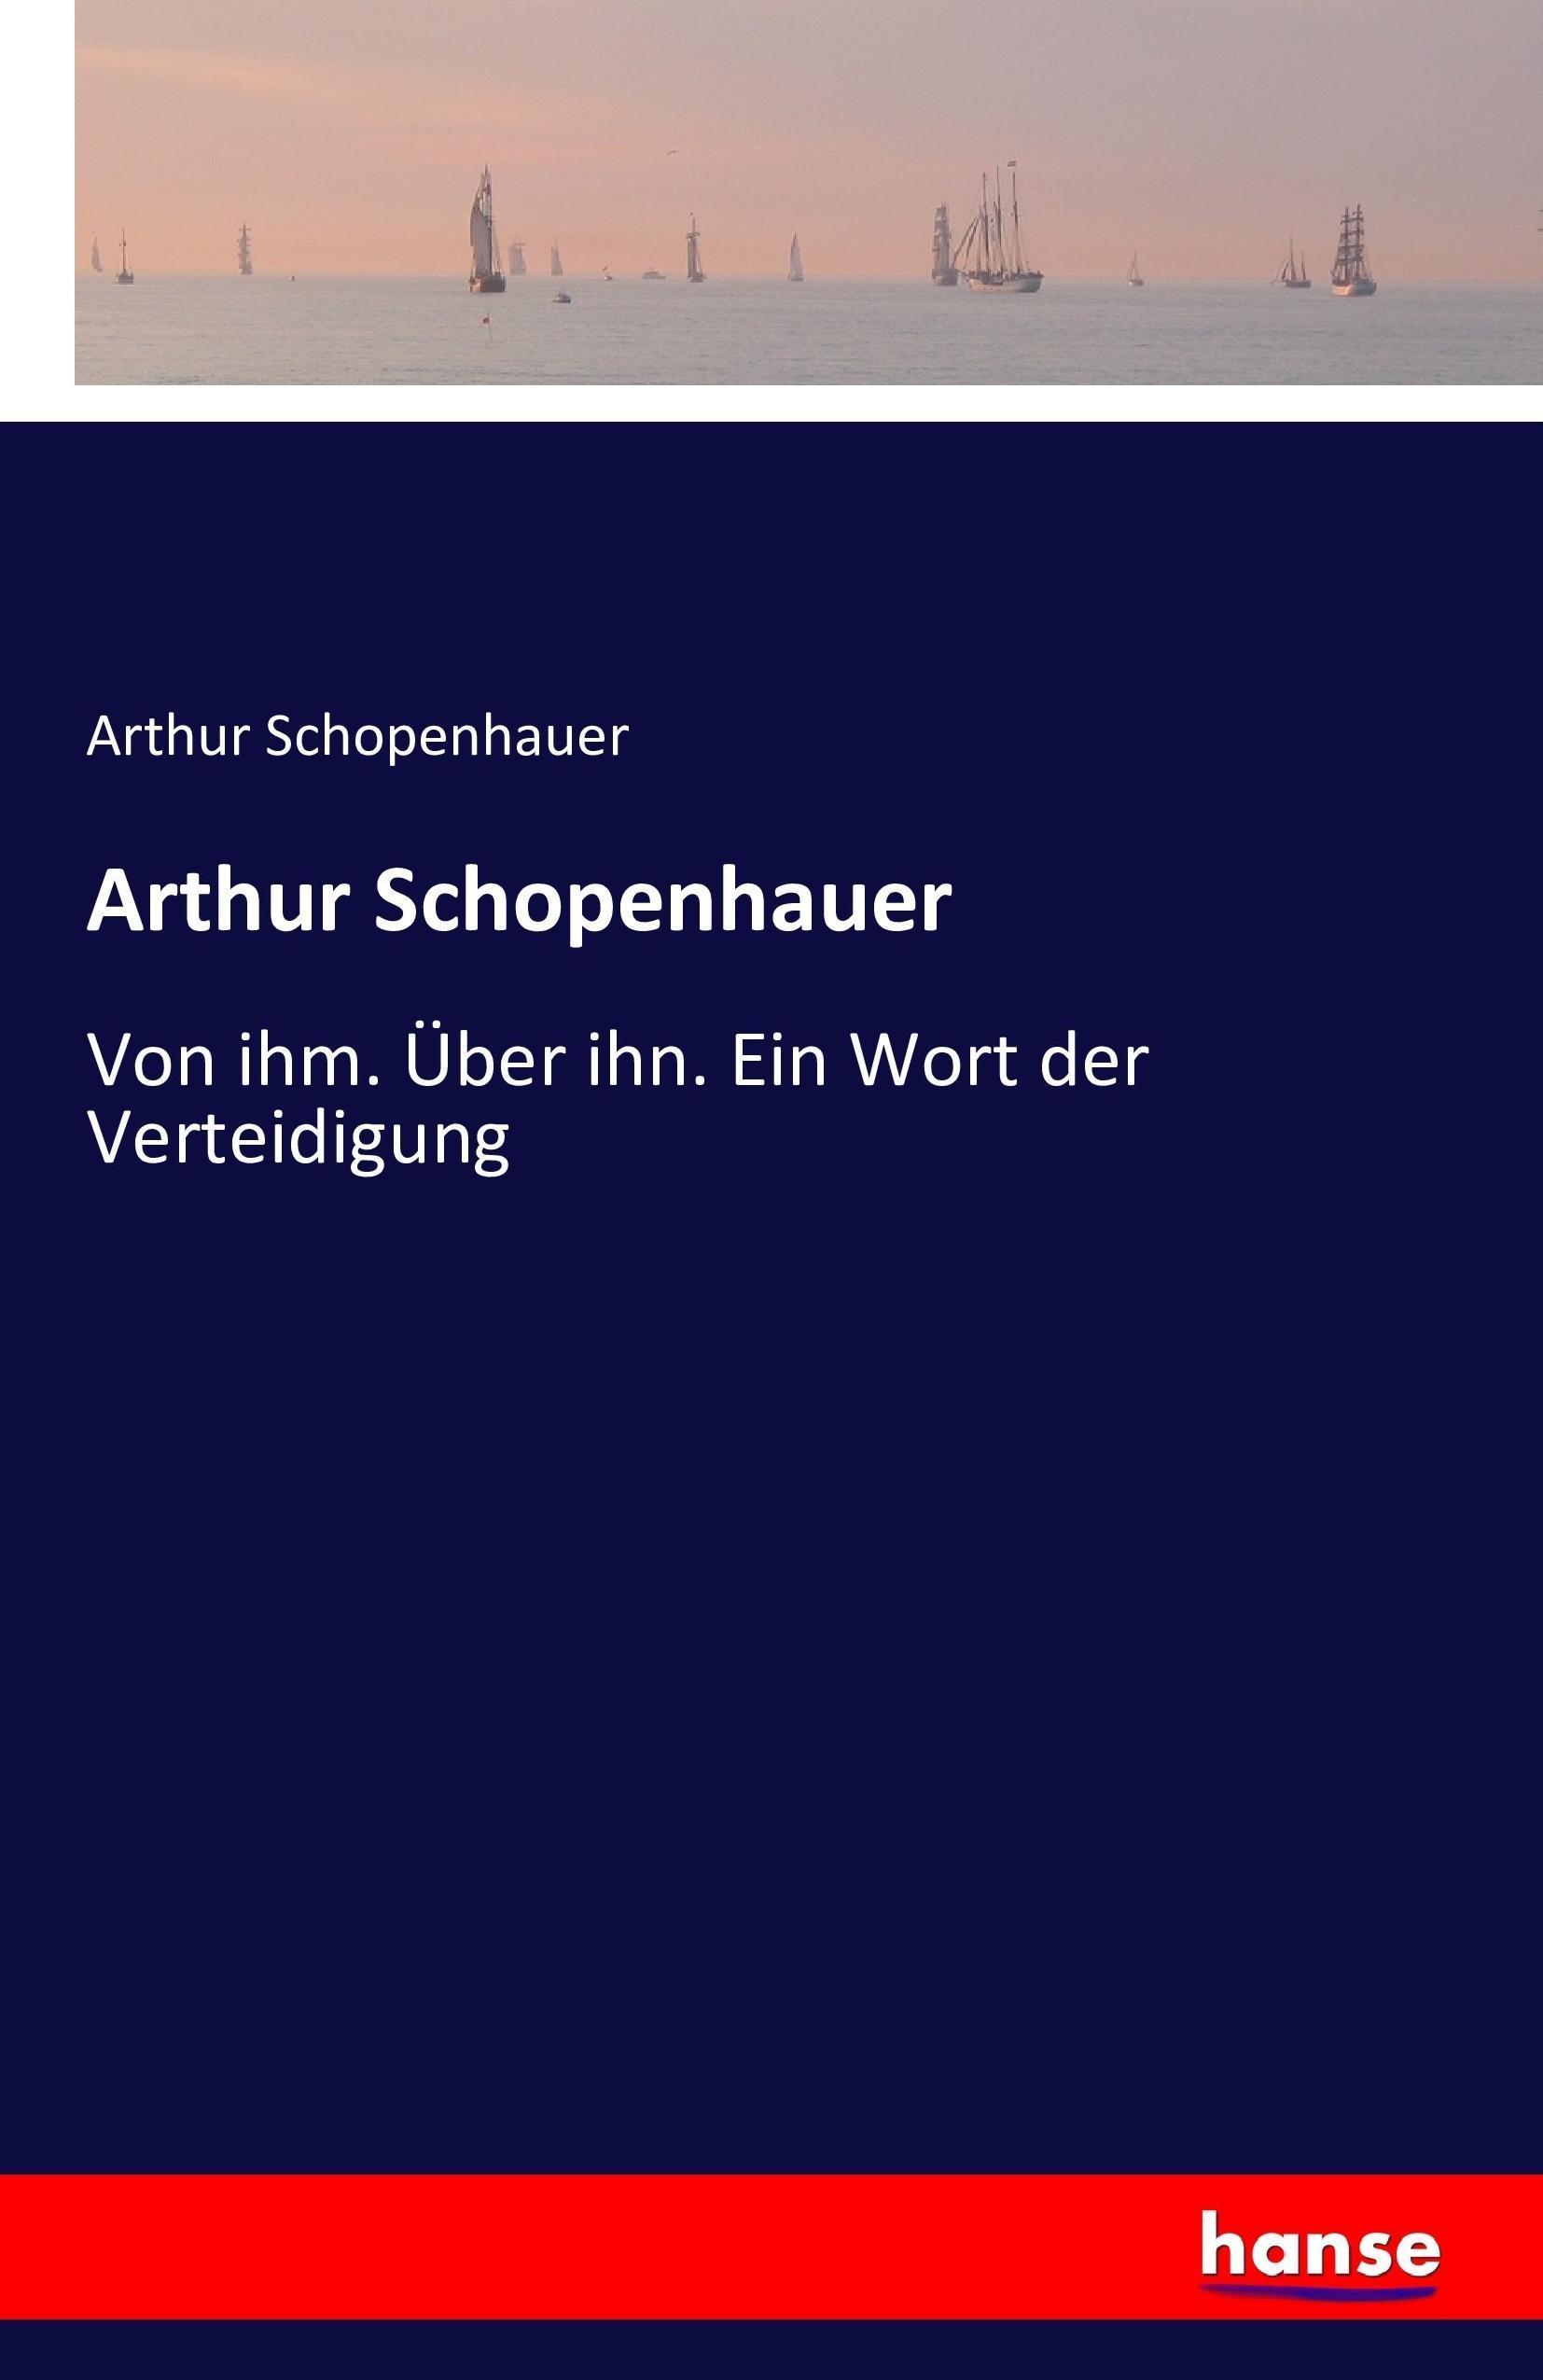 Arthur Schopenhauer | Von ihm. Über ihn. Ein Wort der Verteidigung | Arthur Schopenhauer | Taschenbuch | Paperback | 772 S. | Deutsch | 2016 | hansebooks | EAN 9783742817990 - Schopenhauer, Arthur